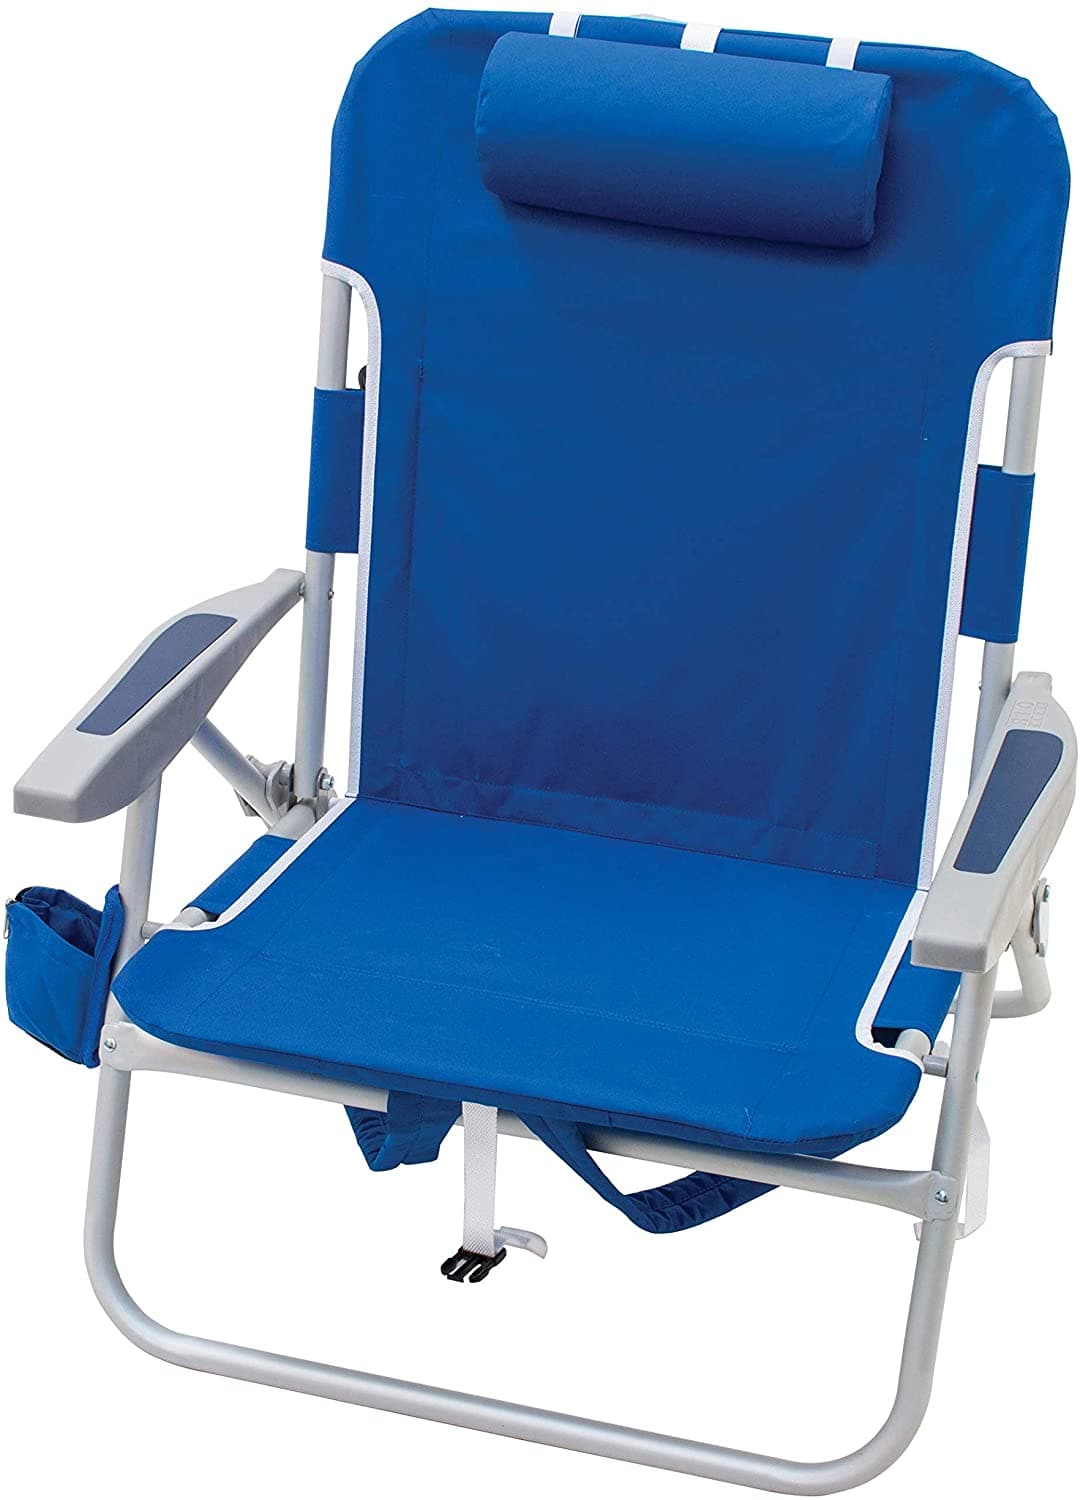 RIO Big Boy 4-Position 13" High Seat Backpack Beach Folding Chair - Senior.com Beach Chairs